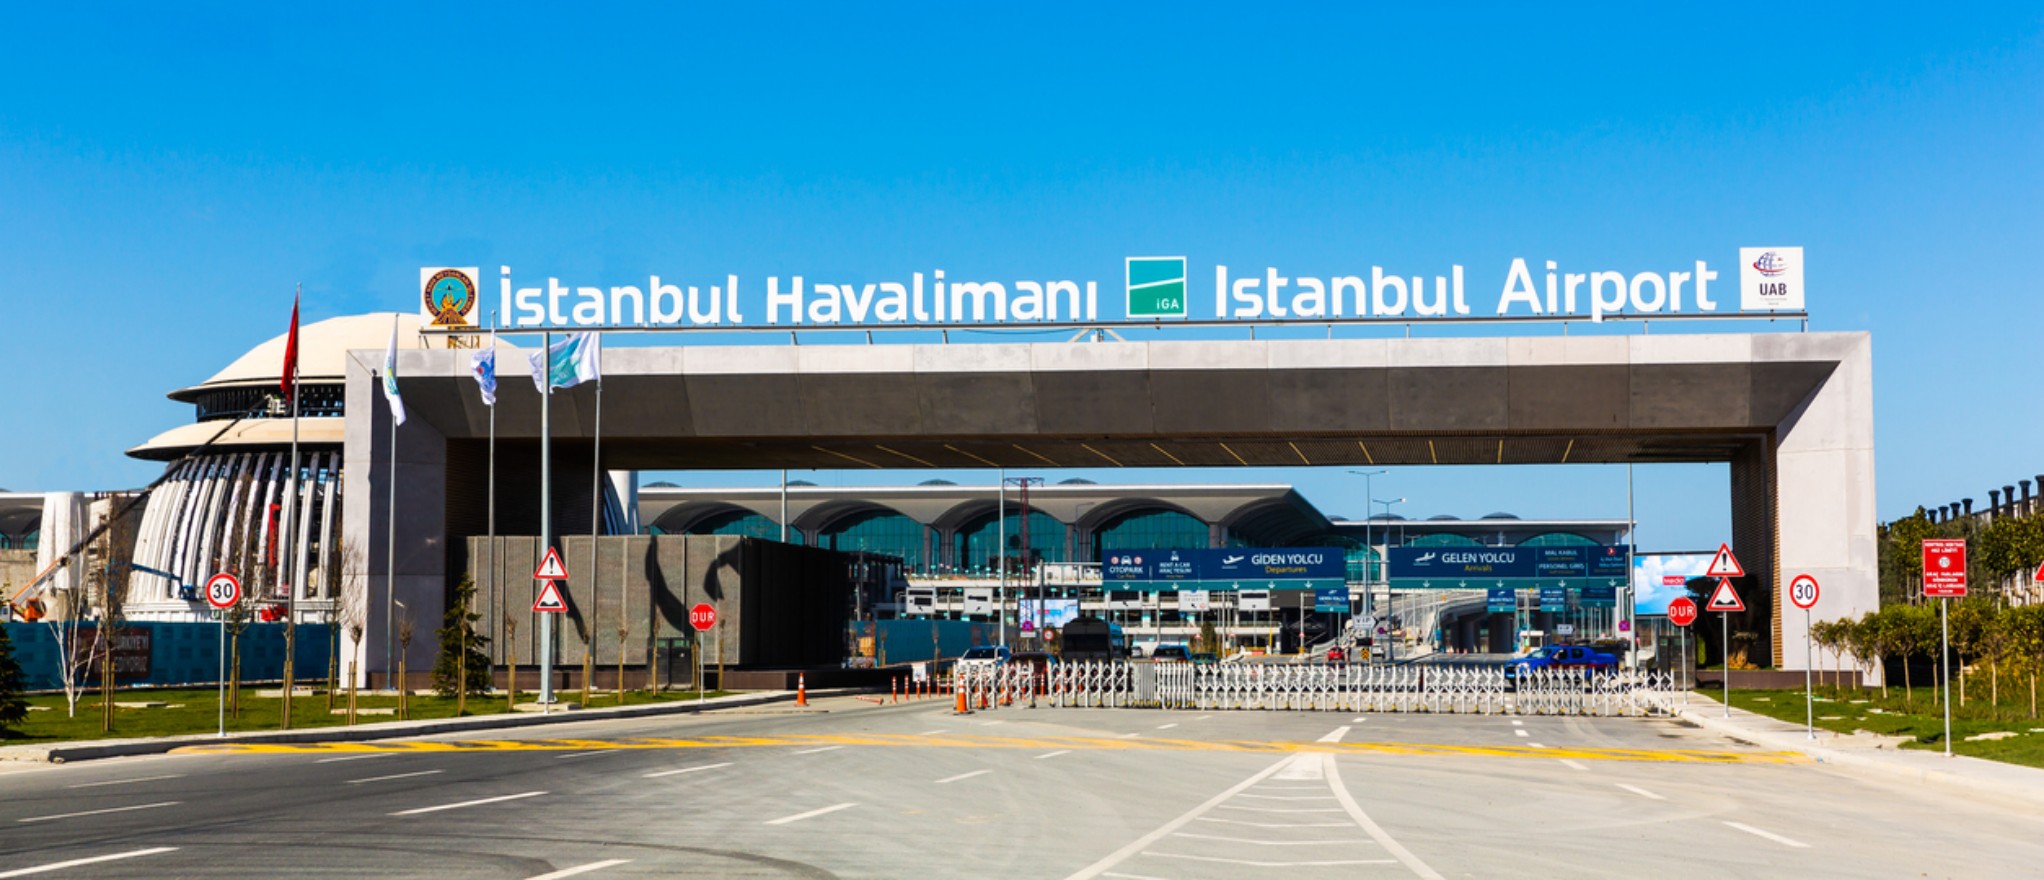 İstanbul Hava limanına Özel Transfer